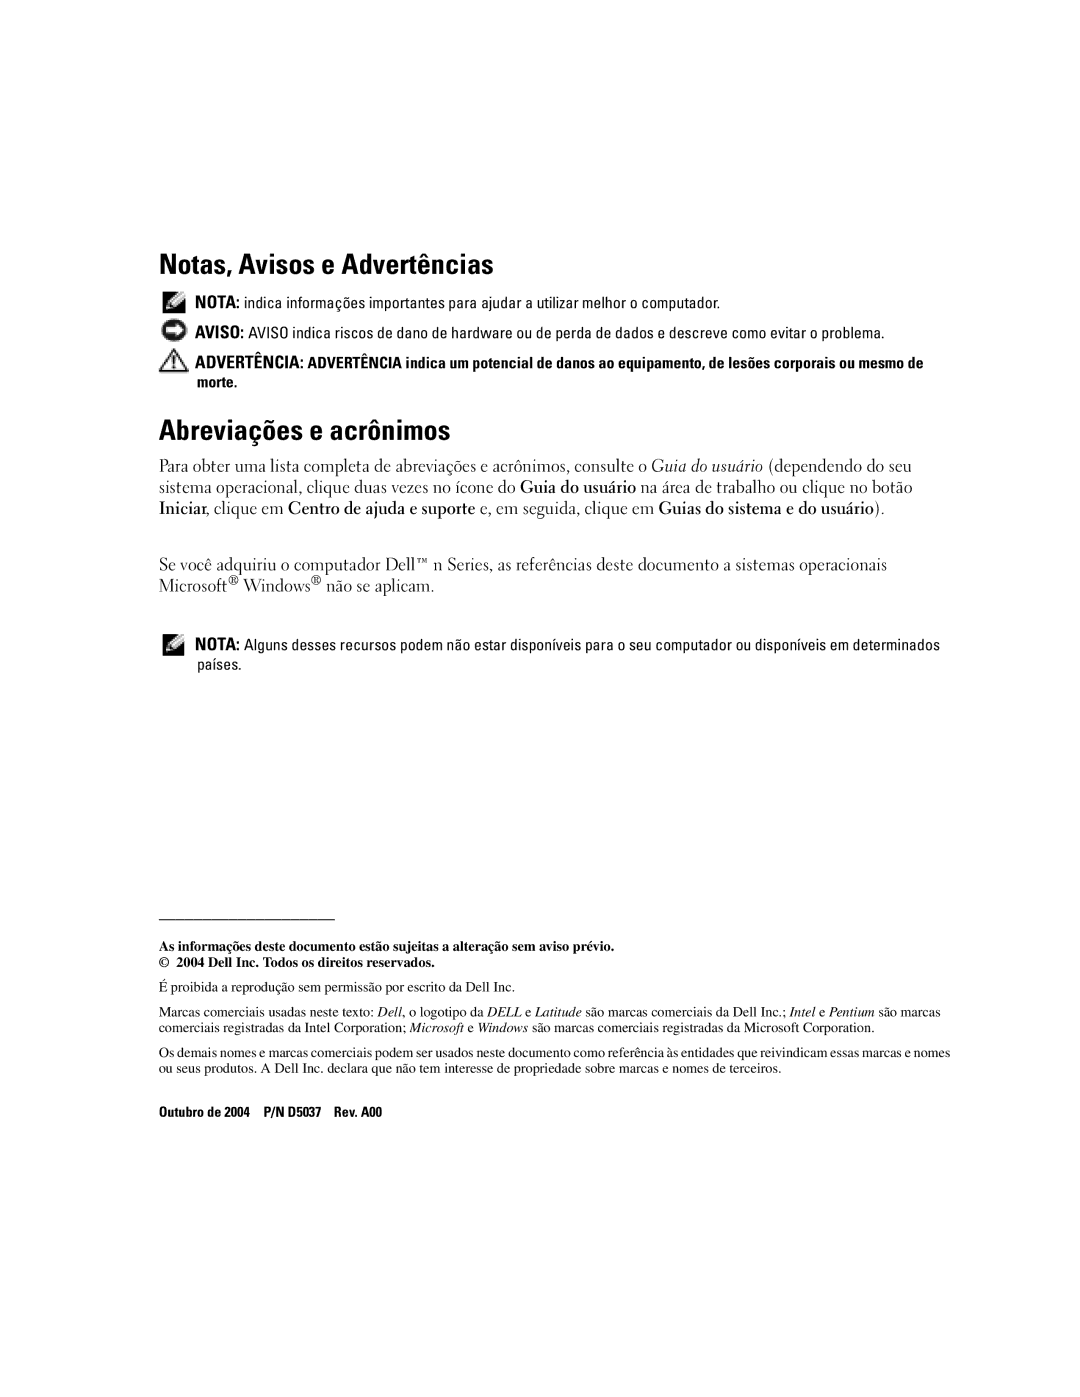 Dell D610 manual Notas, Avisos e Advertências, Abreviações e acrônimos 